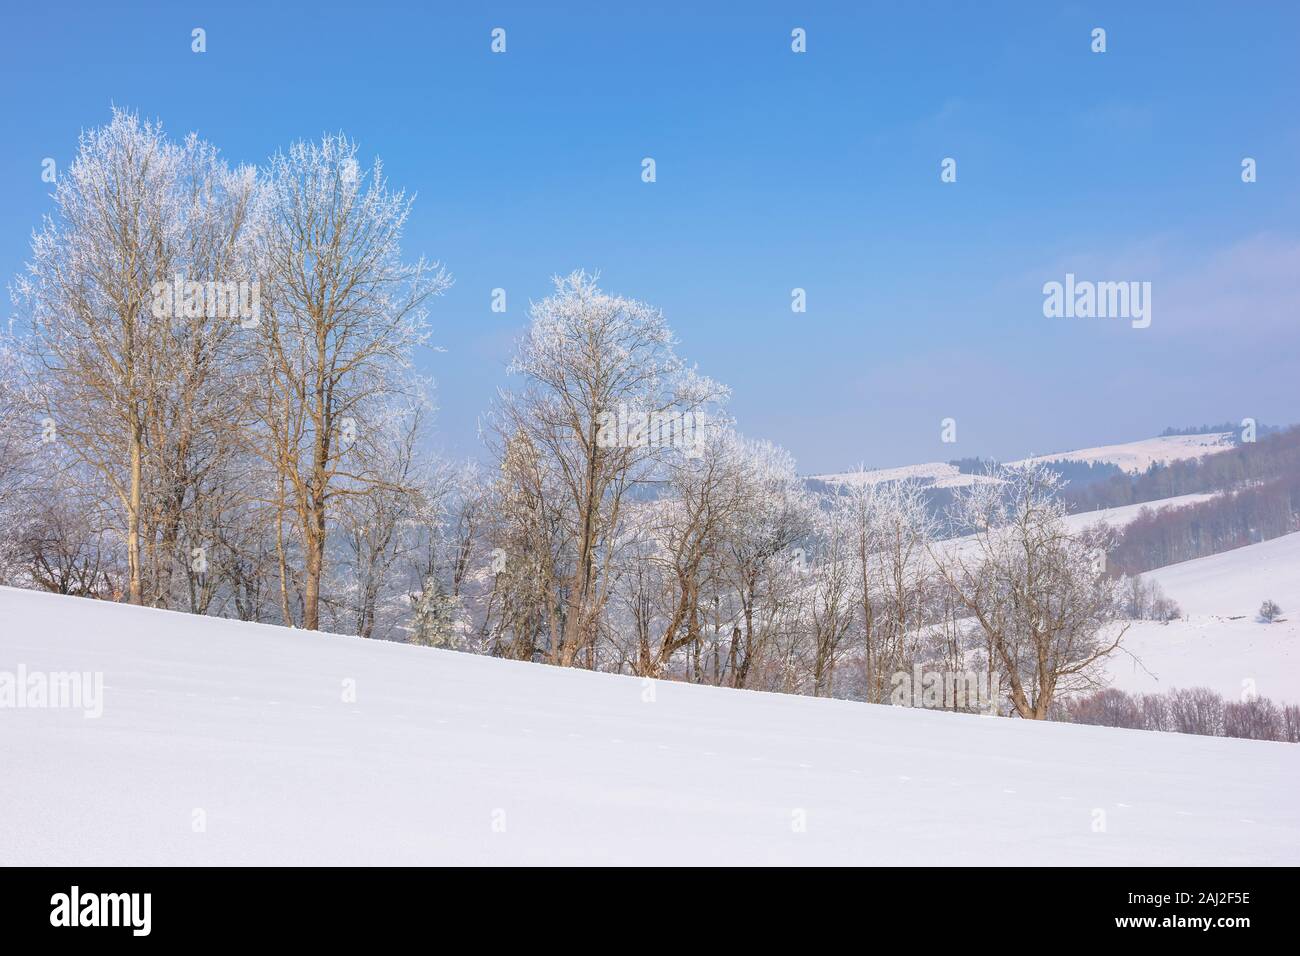 Bäume im Raureif auf schneebedeckten Wiese. sonnigen Vormittag des bergigen Landschaft. dunstige Atmosphäre mit blauer Himmel. Ruhige winter natur landschaft. Das Stockfoto